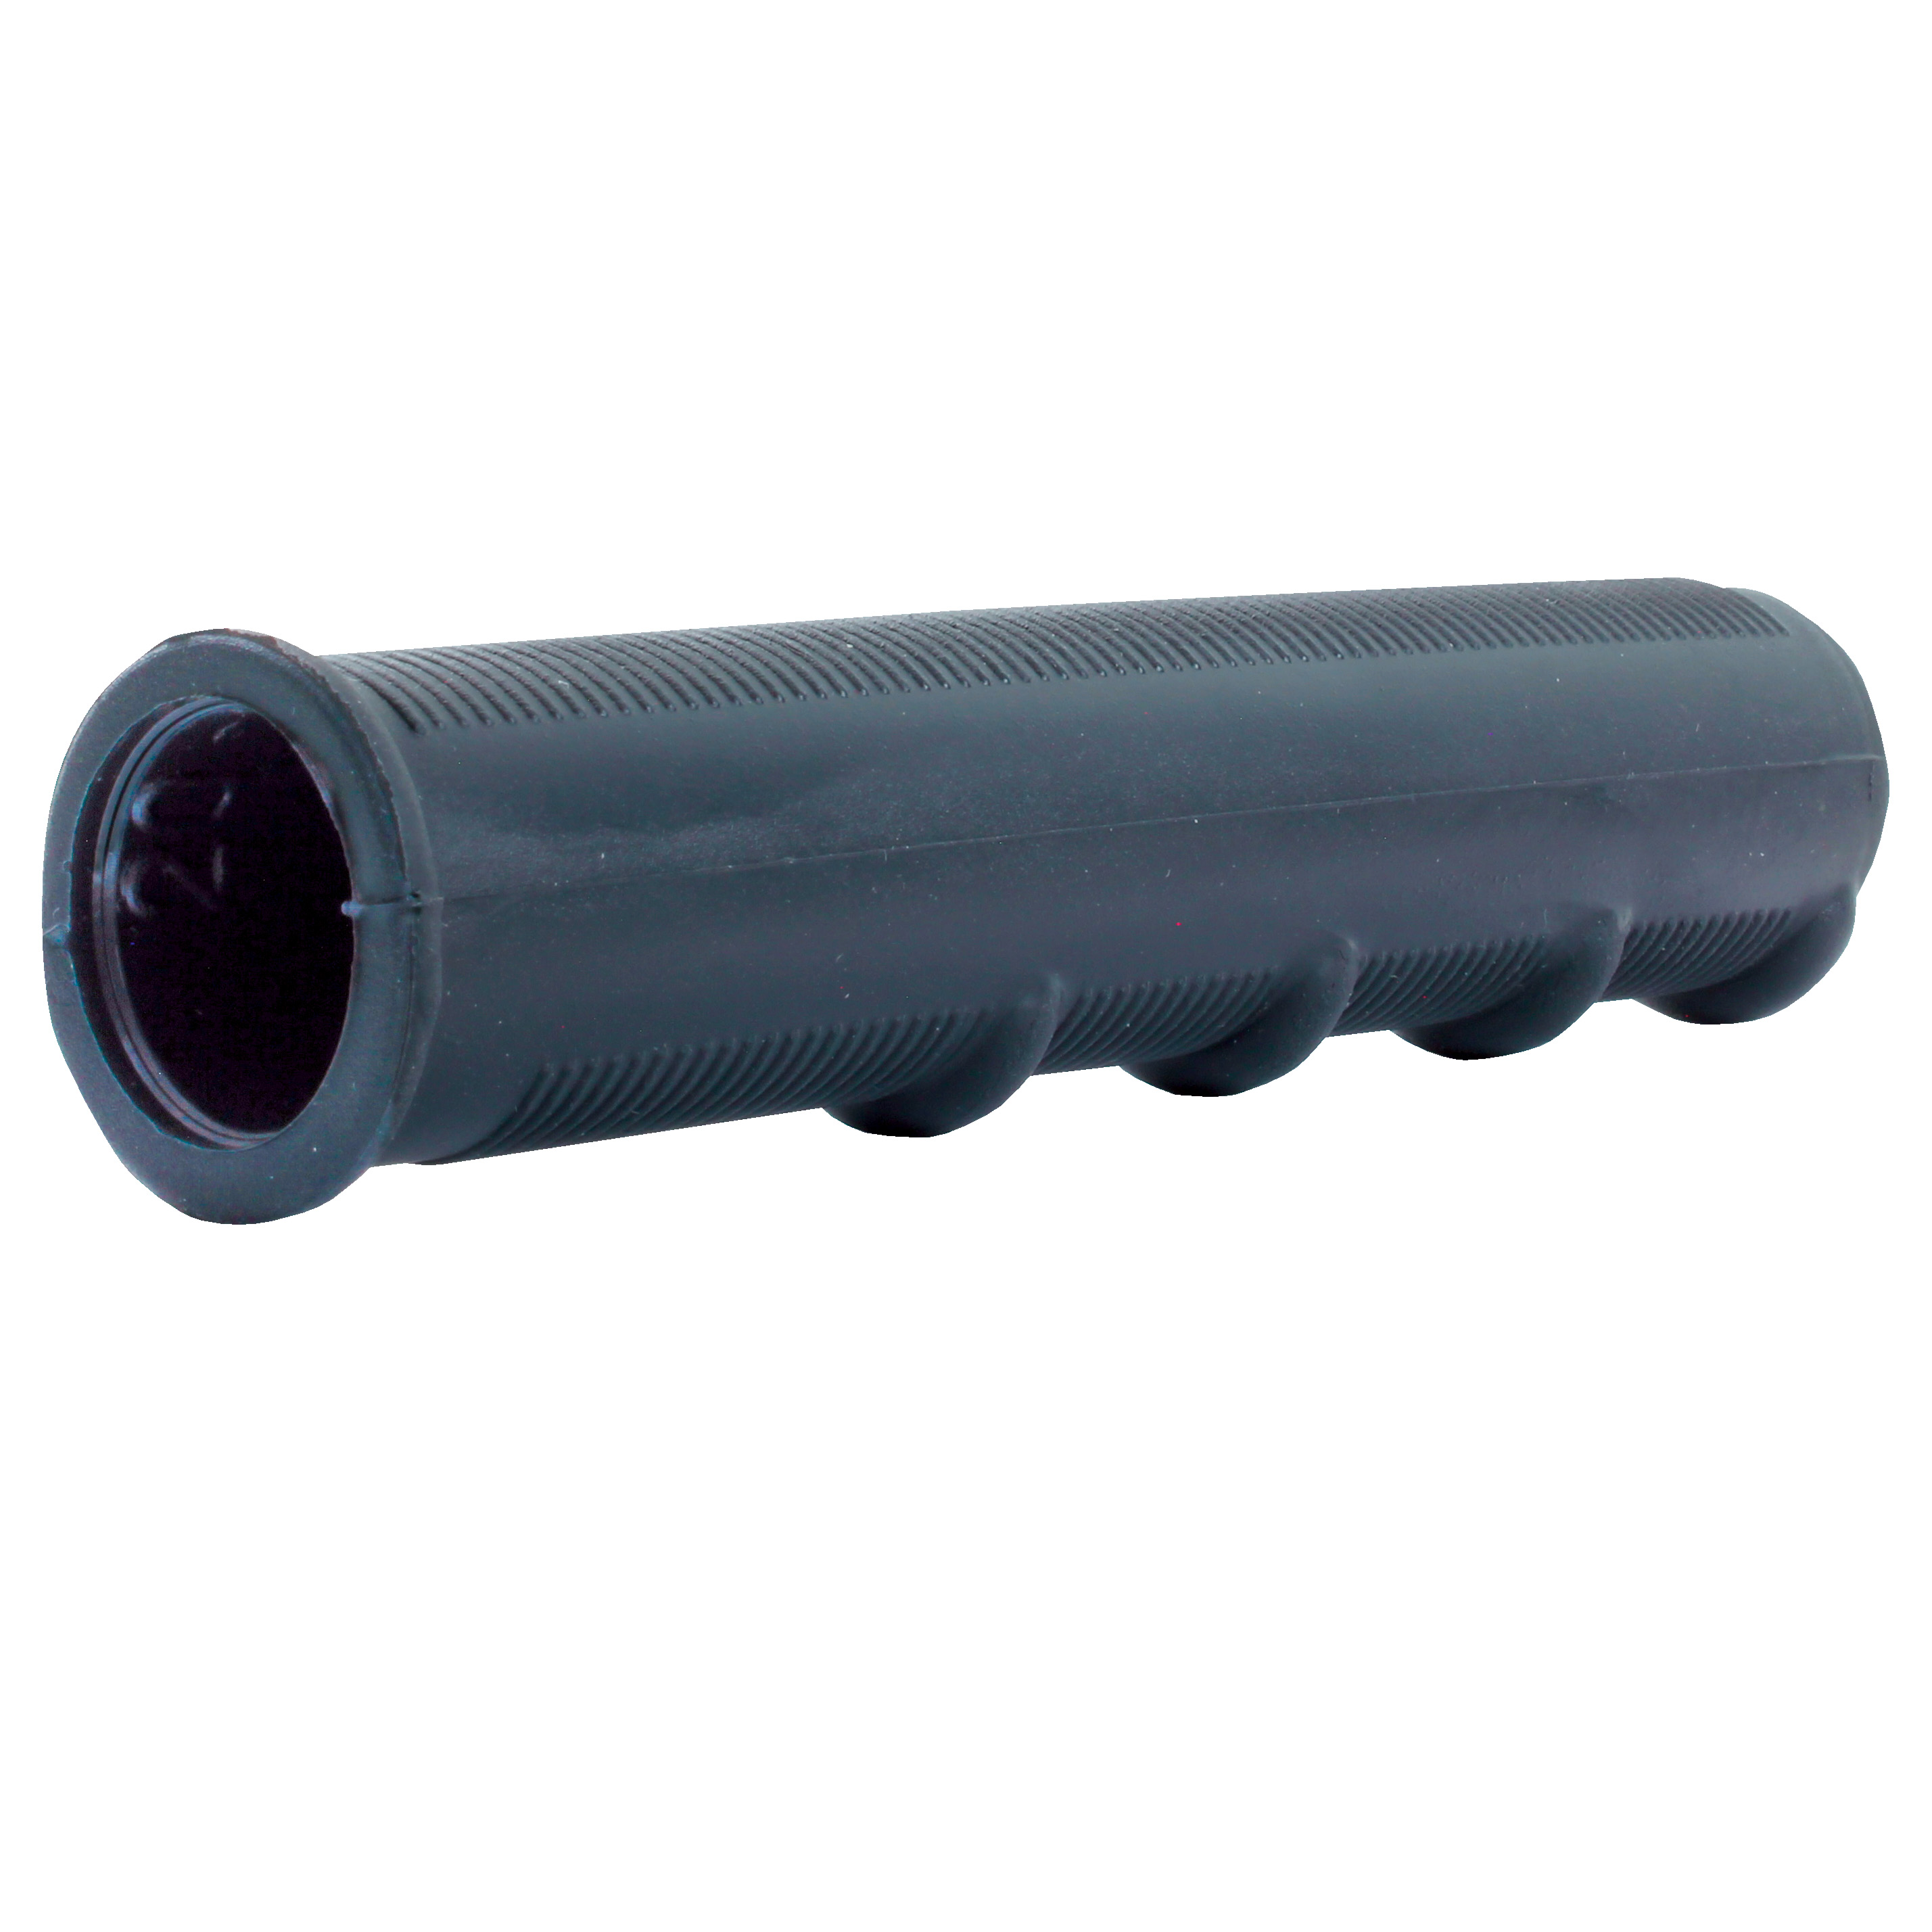 Flexible tube handle - Black PVC - Tubes Ø12 to Ø22 - handle for excellent grip